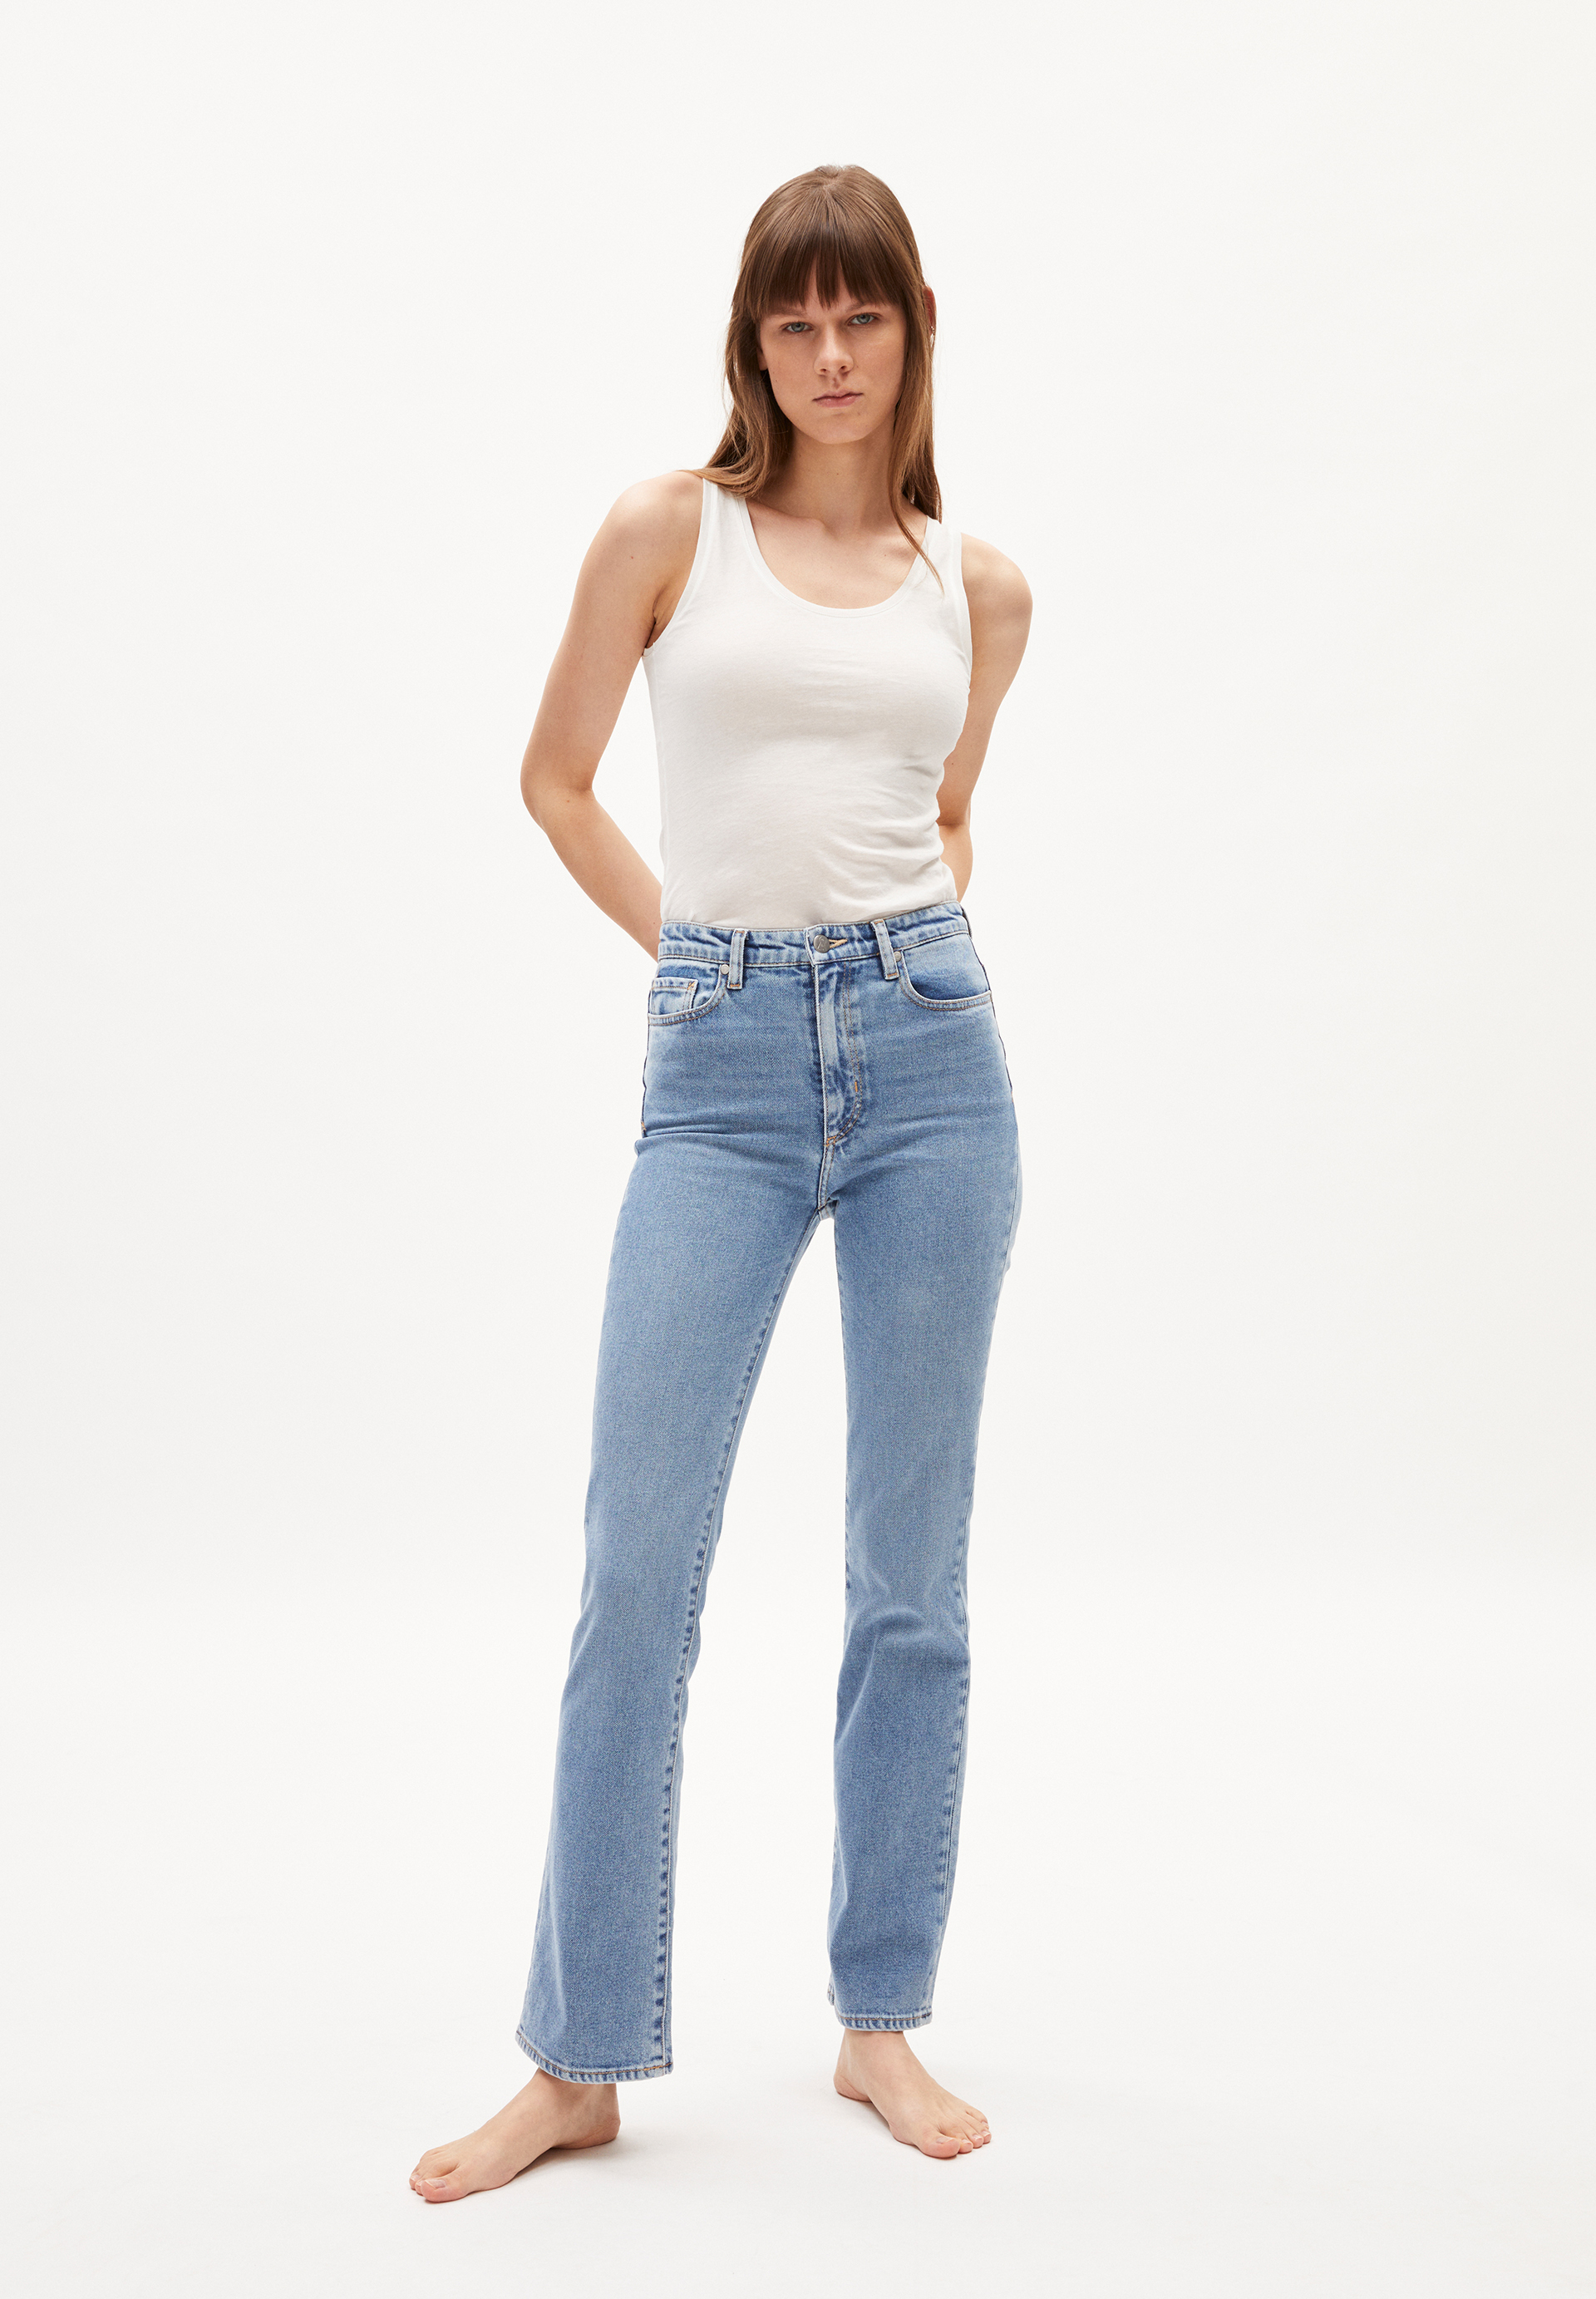 Jeans LINNAA in easy blue von ARMEDANGELS